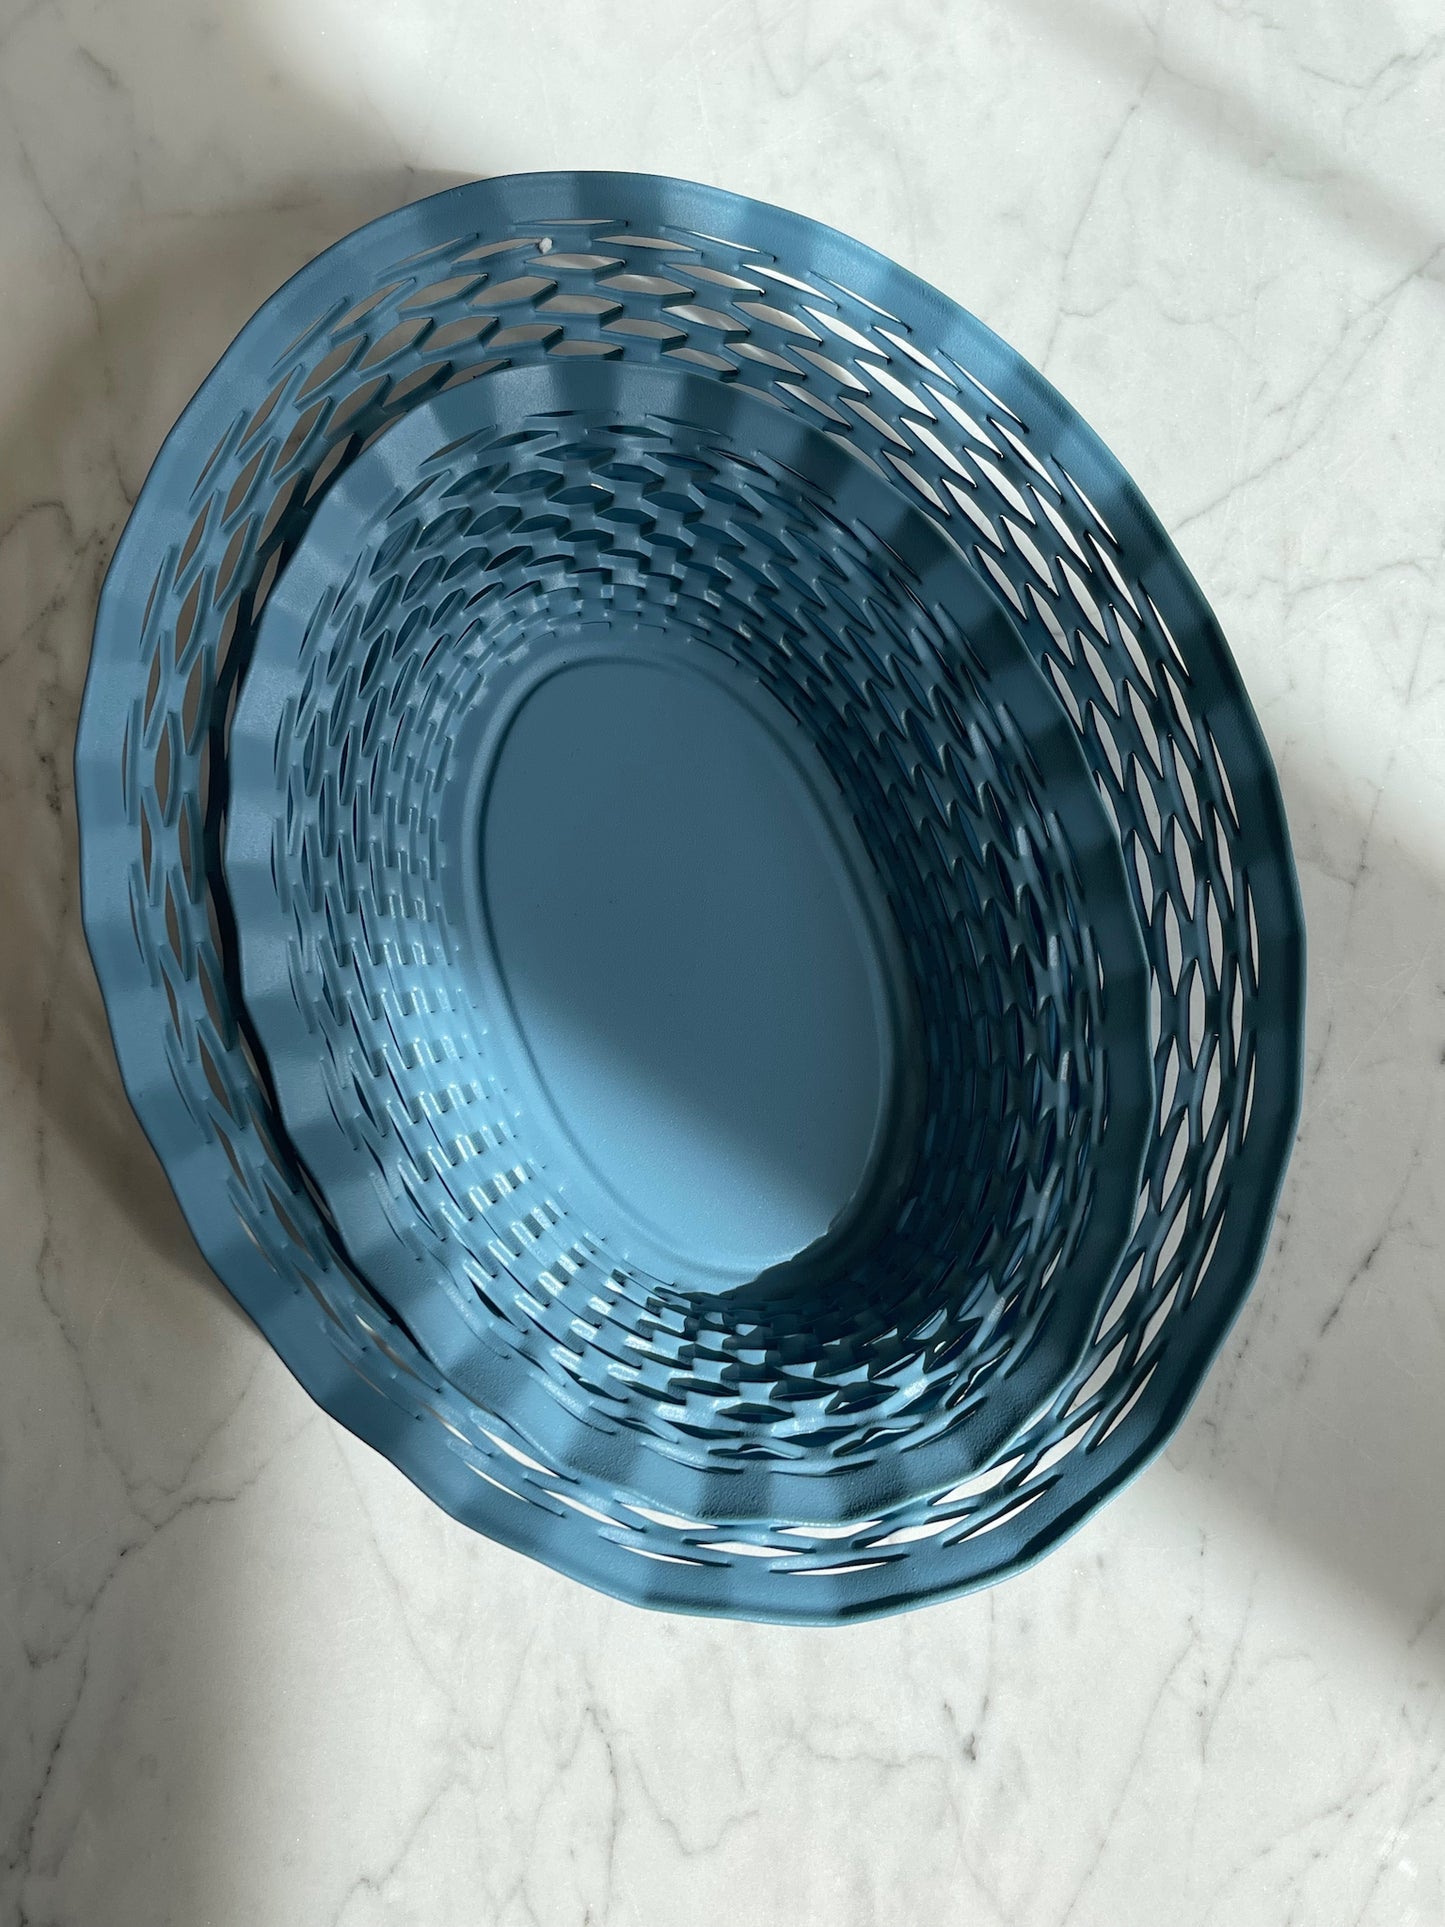 Bread basket from France - BLUE matt